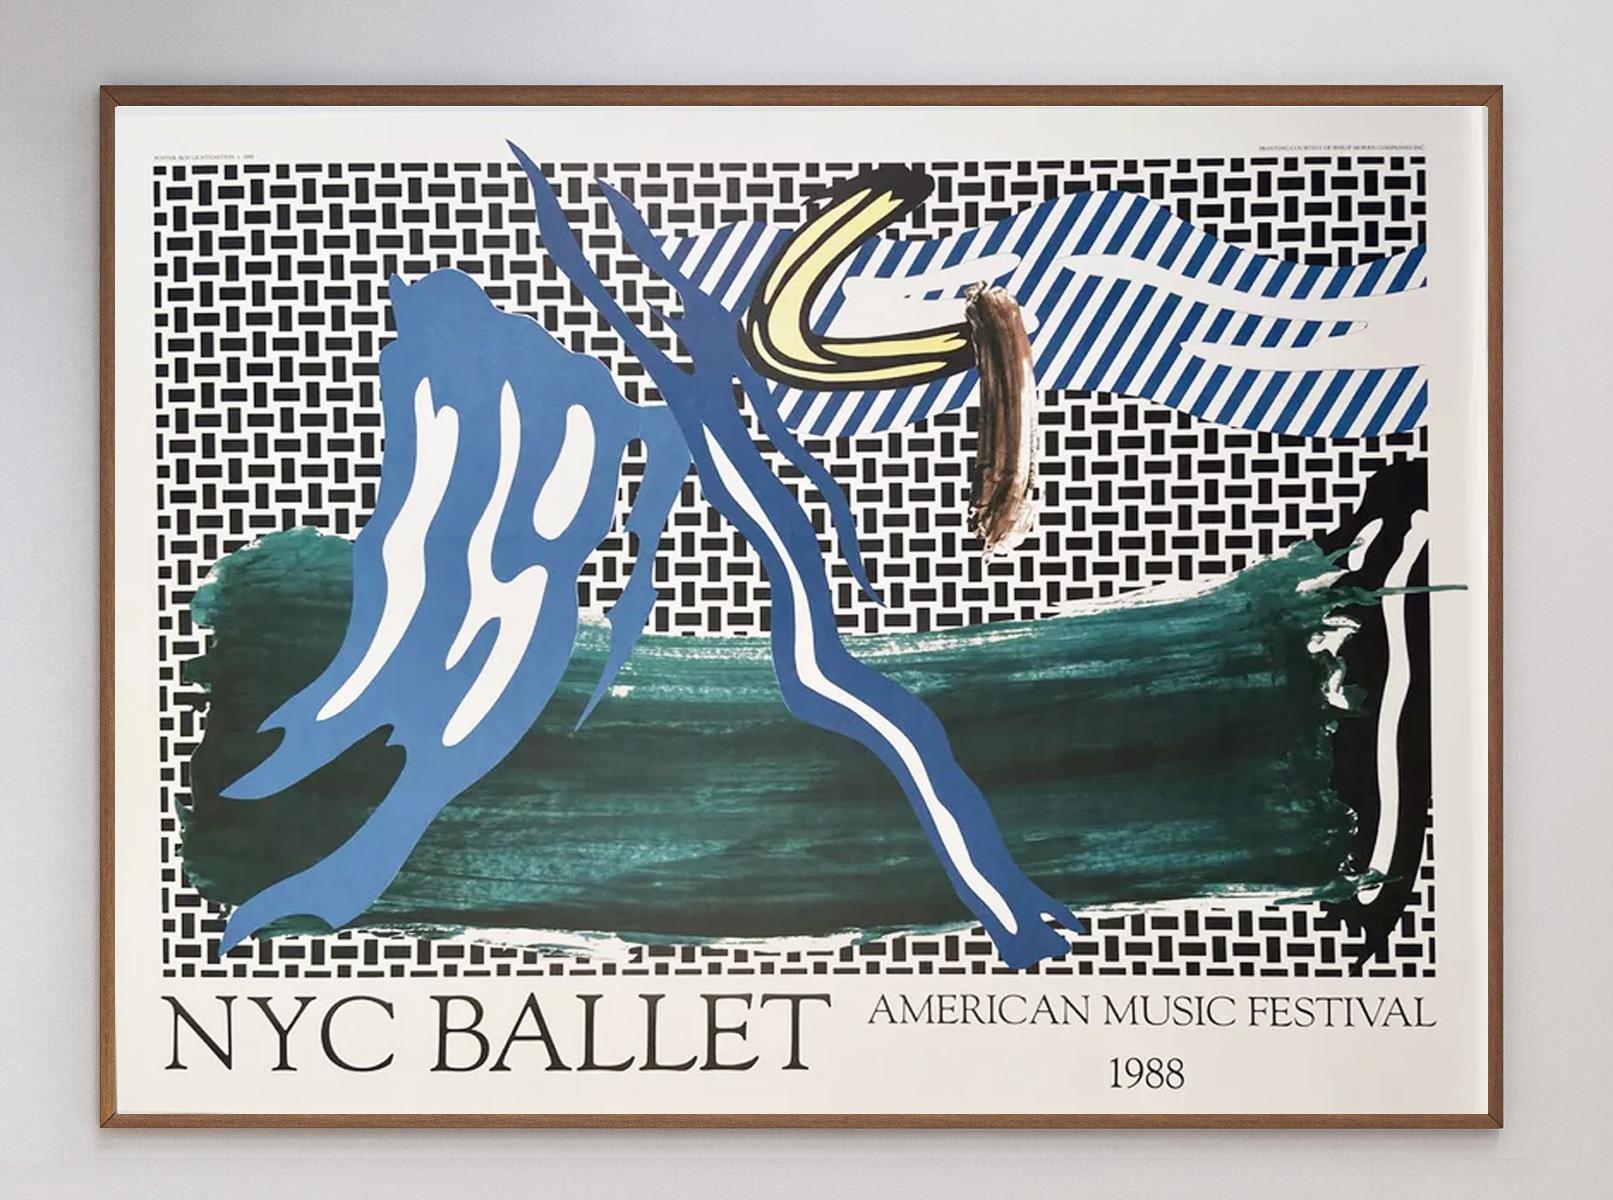 Ce superbe dessin rare a été créé pour l'American Music Festival de 1988, qui célébrait le 40e anniversaire du New York City Ballet. Avec ses couleurs audacieuses et ses lignes épaisses typiques, il s'agit d'une excellente pièce d'histoire du Pop